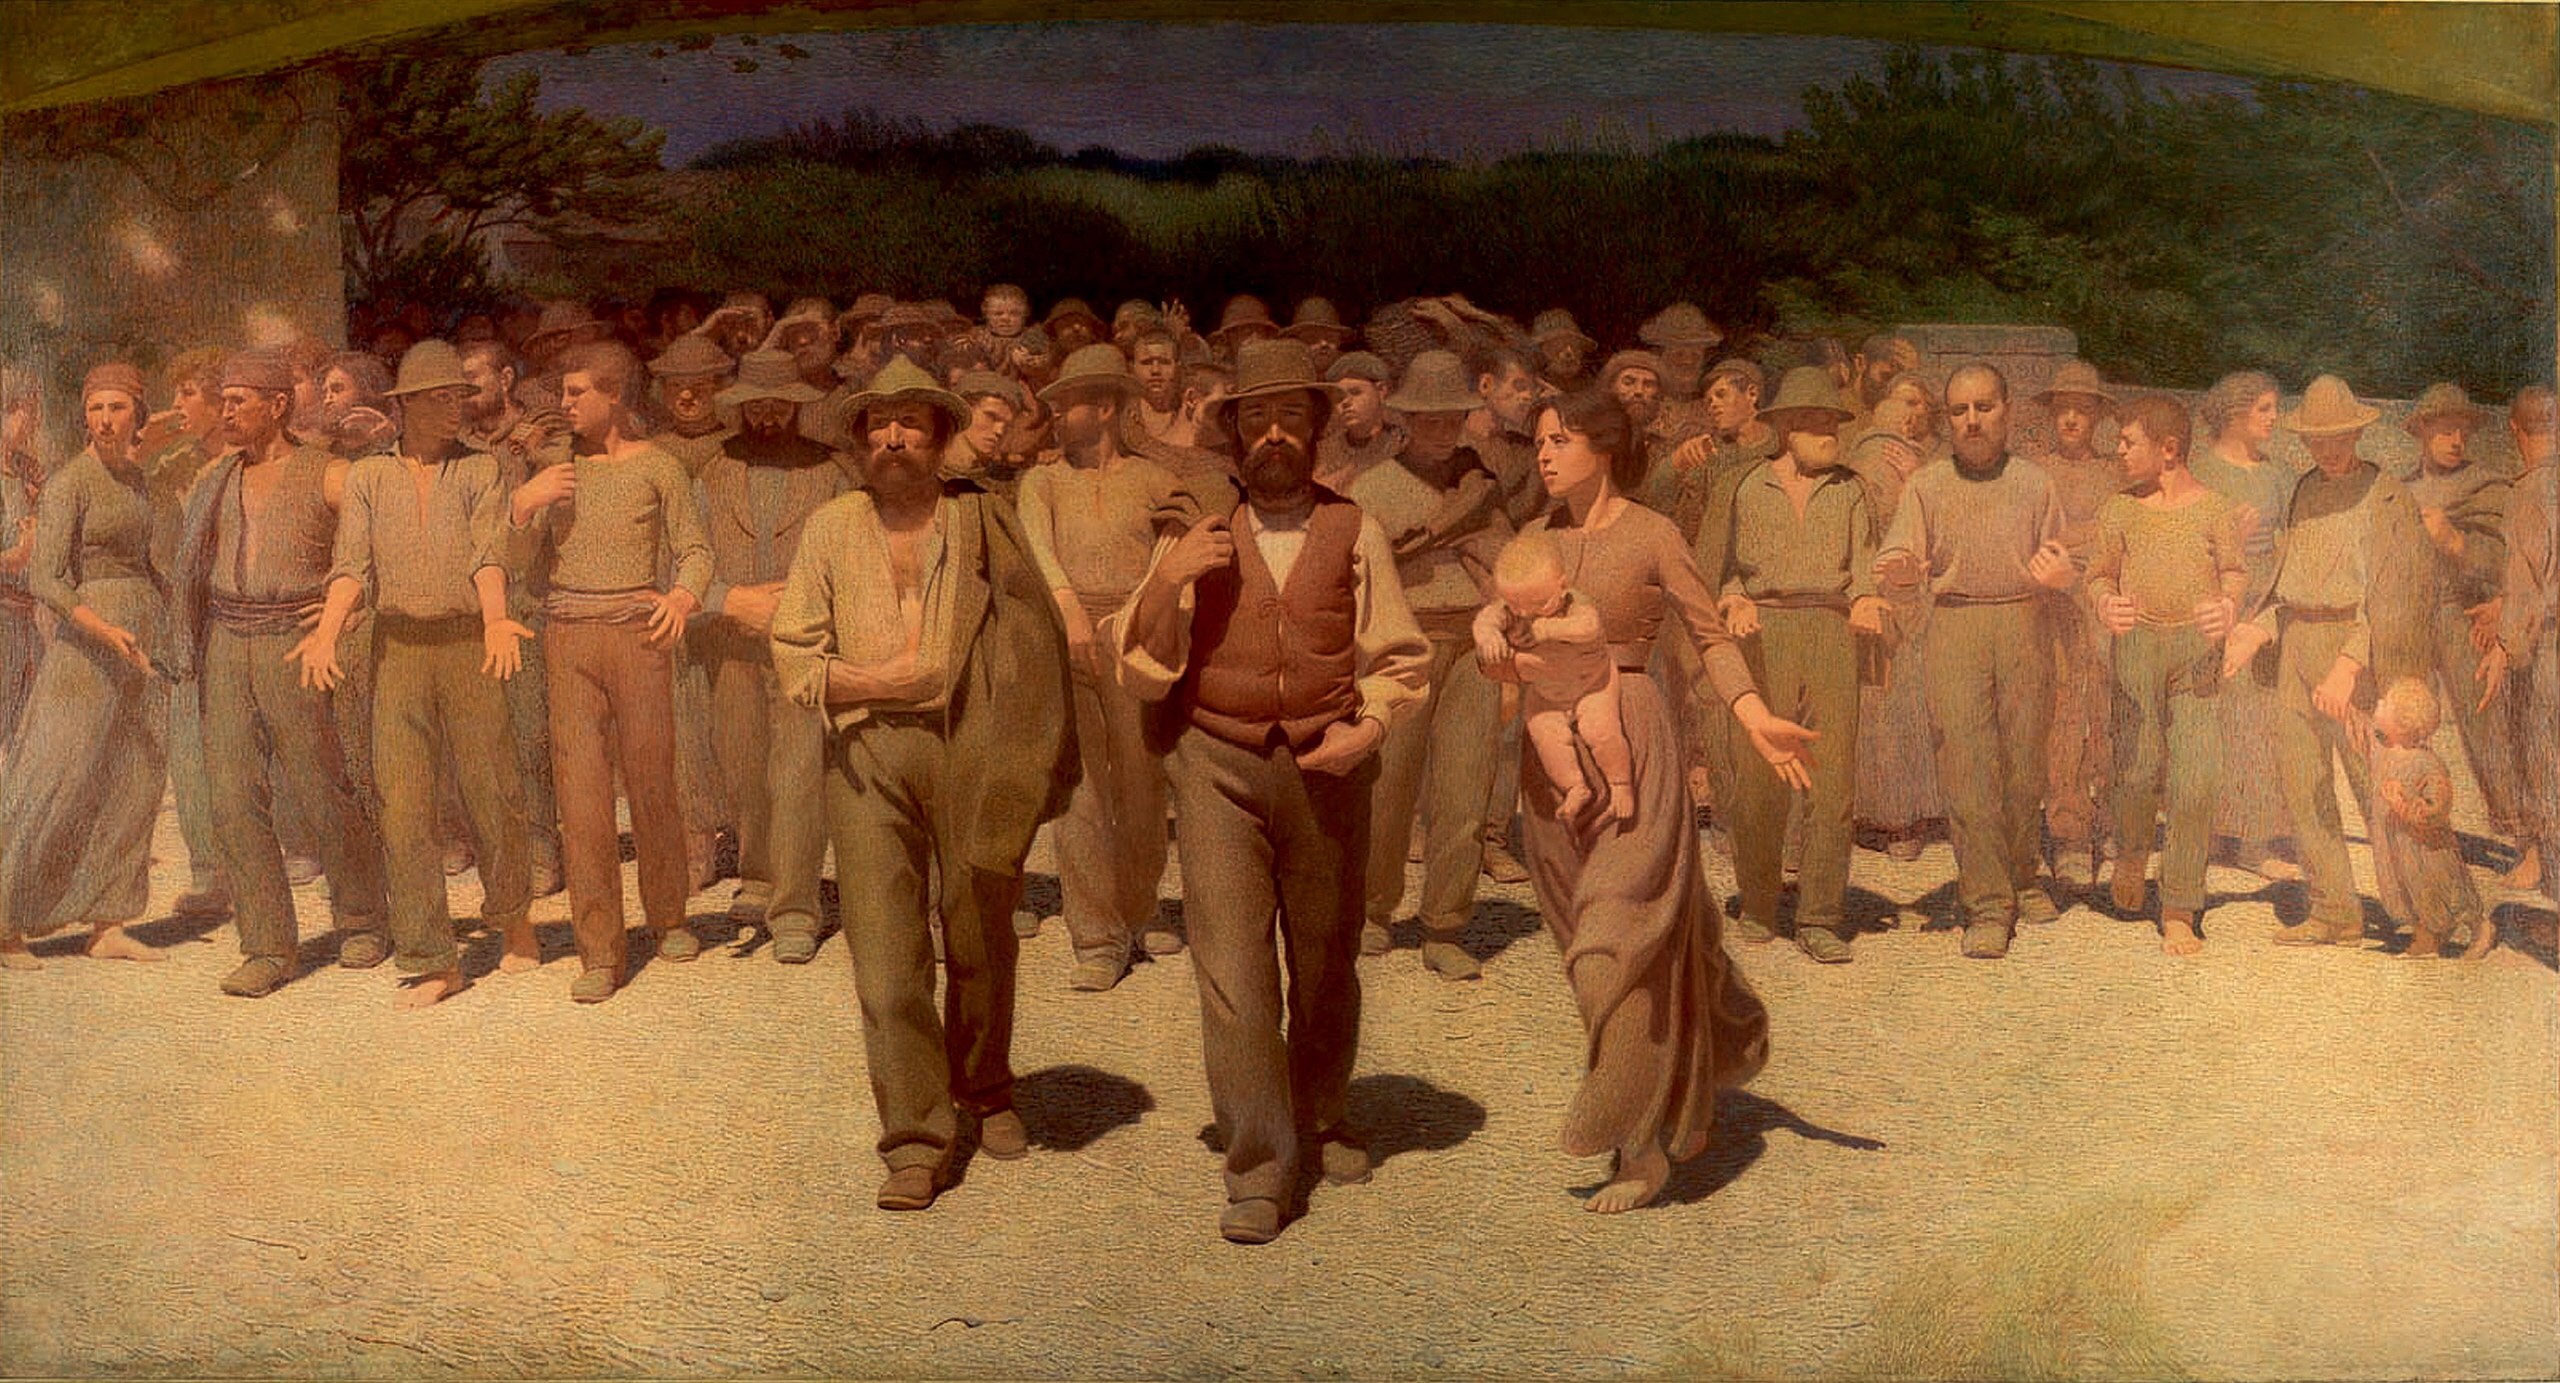 Il dipinto “Il Quarto Stato”, realizzato nel 1901 dal pittore Giuseppe Pellizza Da Volpedo, rappresenta i lavoratori più umili, tormentati dallo sfruttamento e dai problemi della povertà